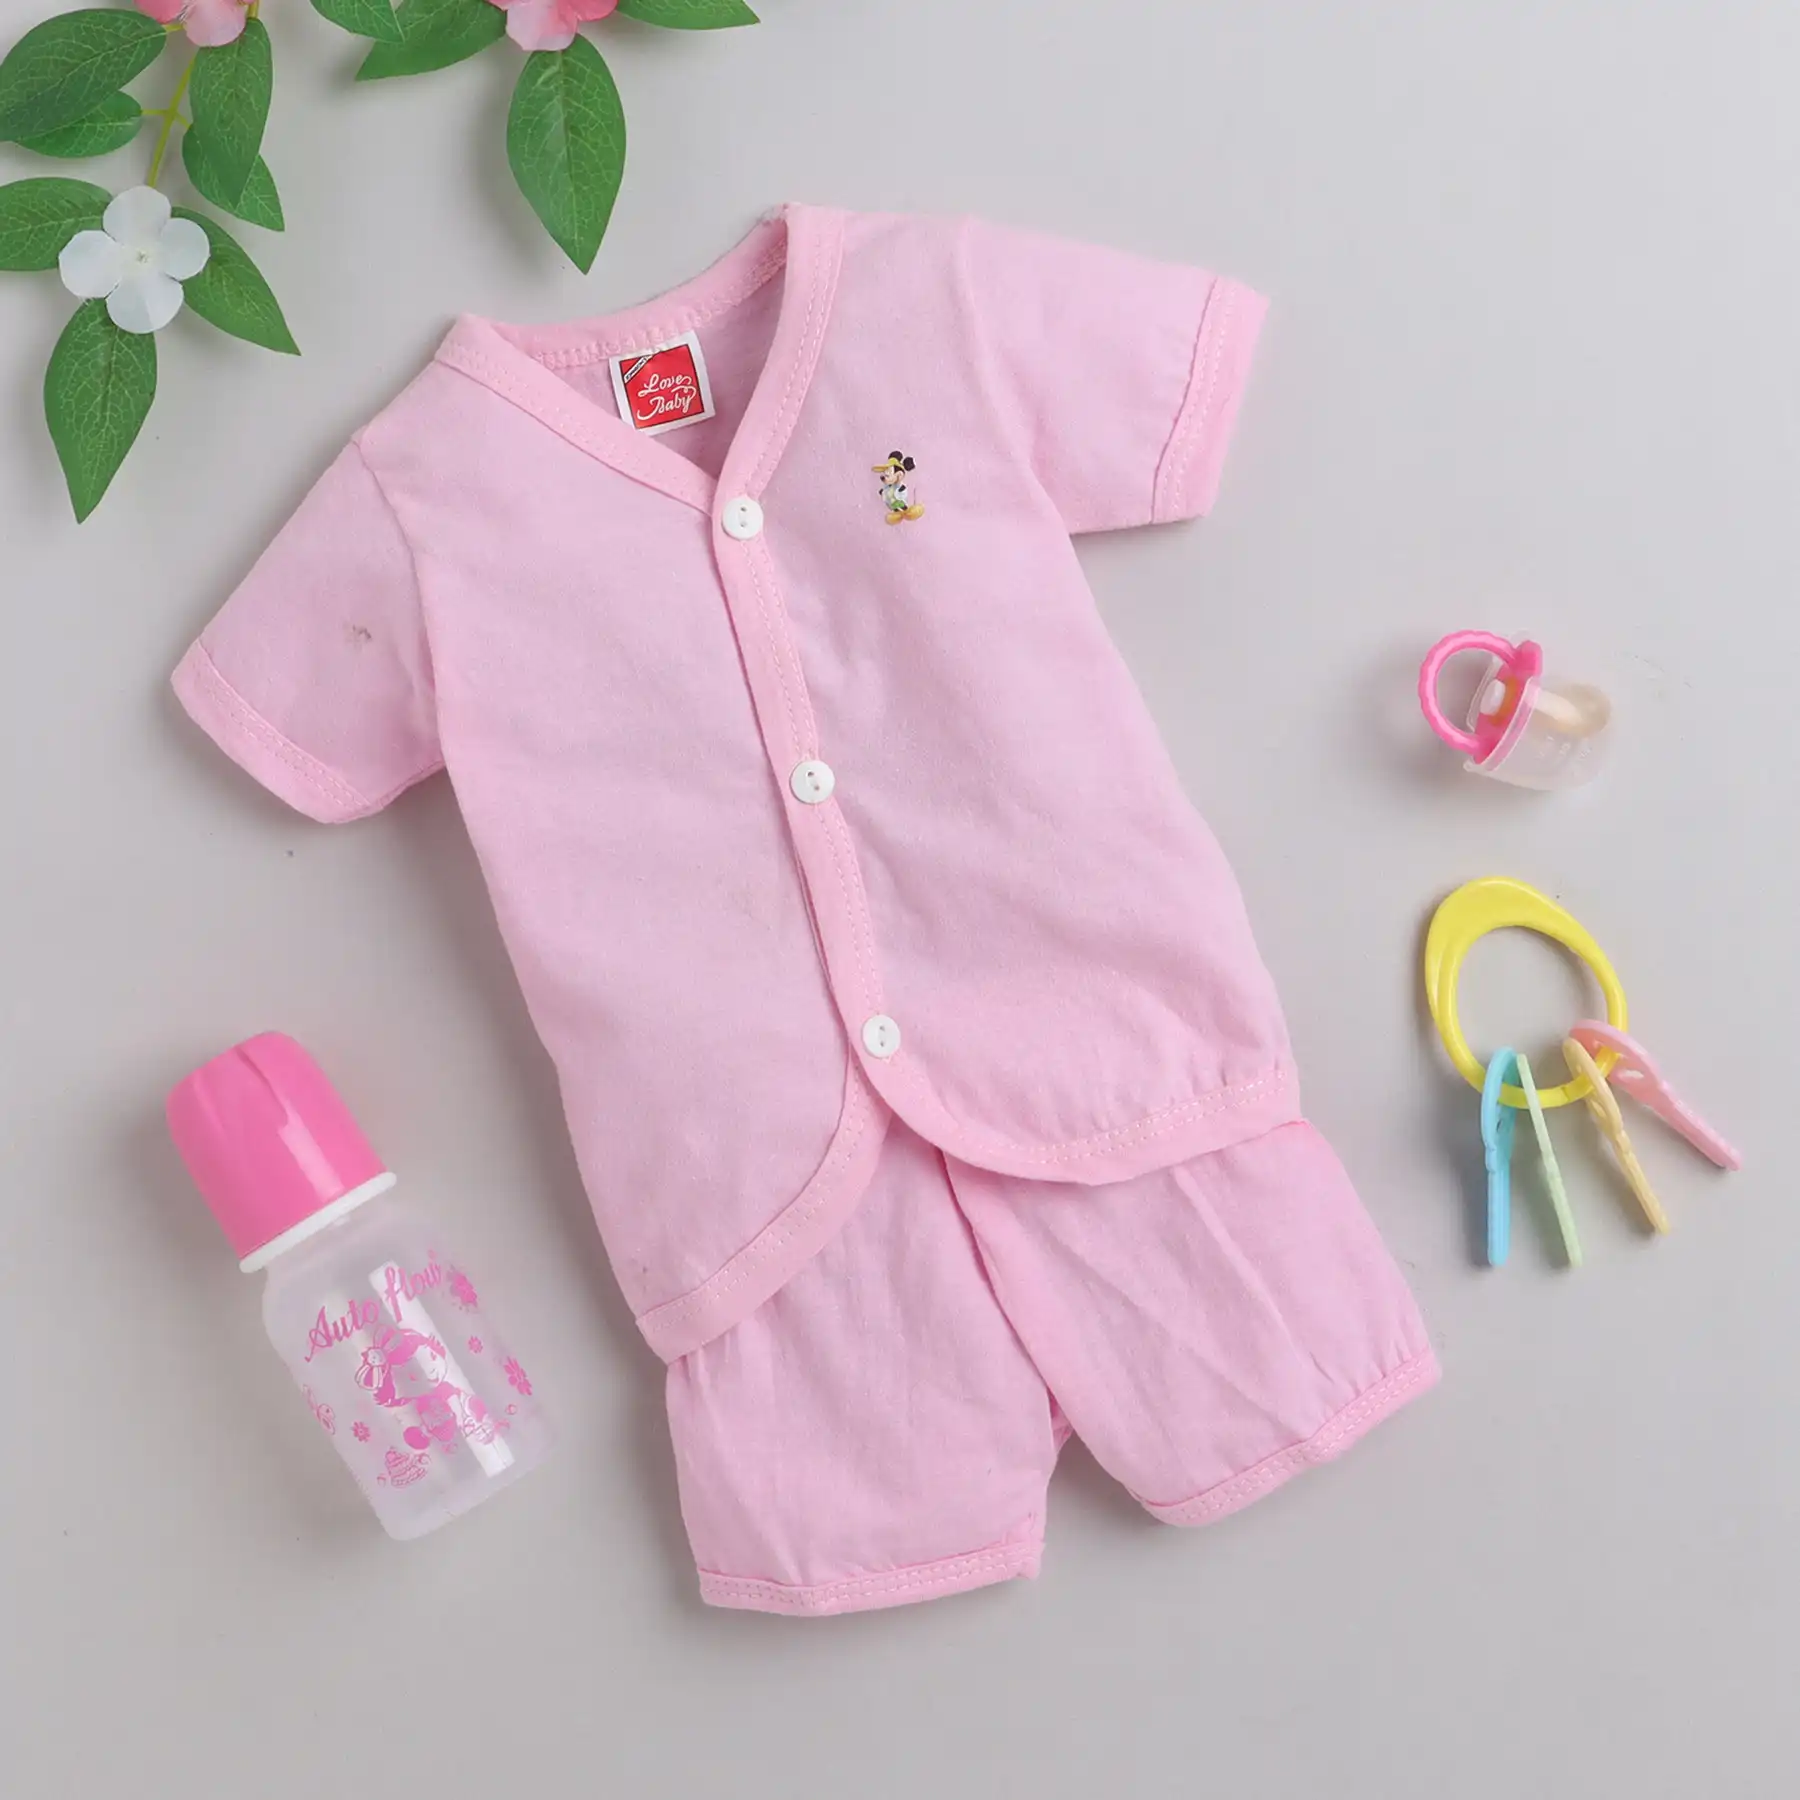 Newborn Gift Box Pink